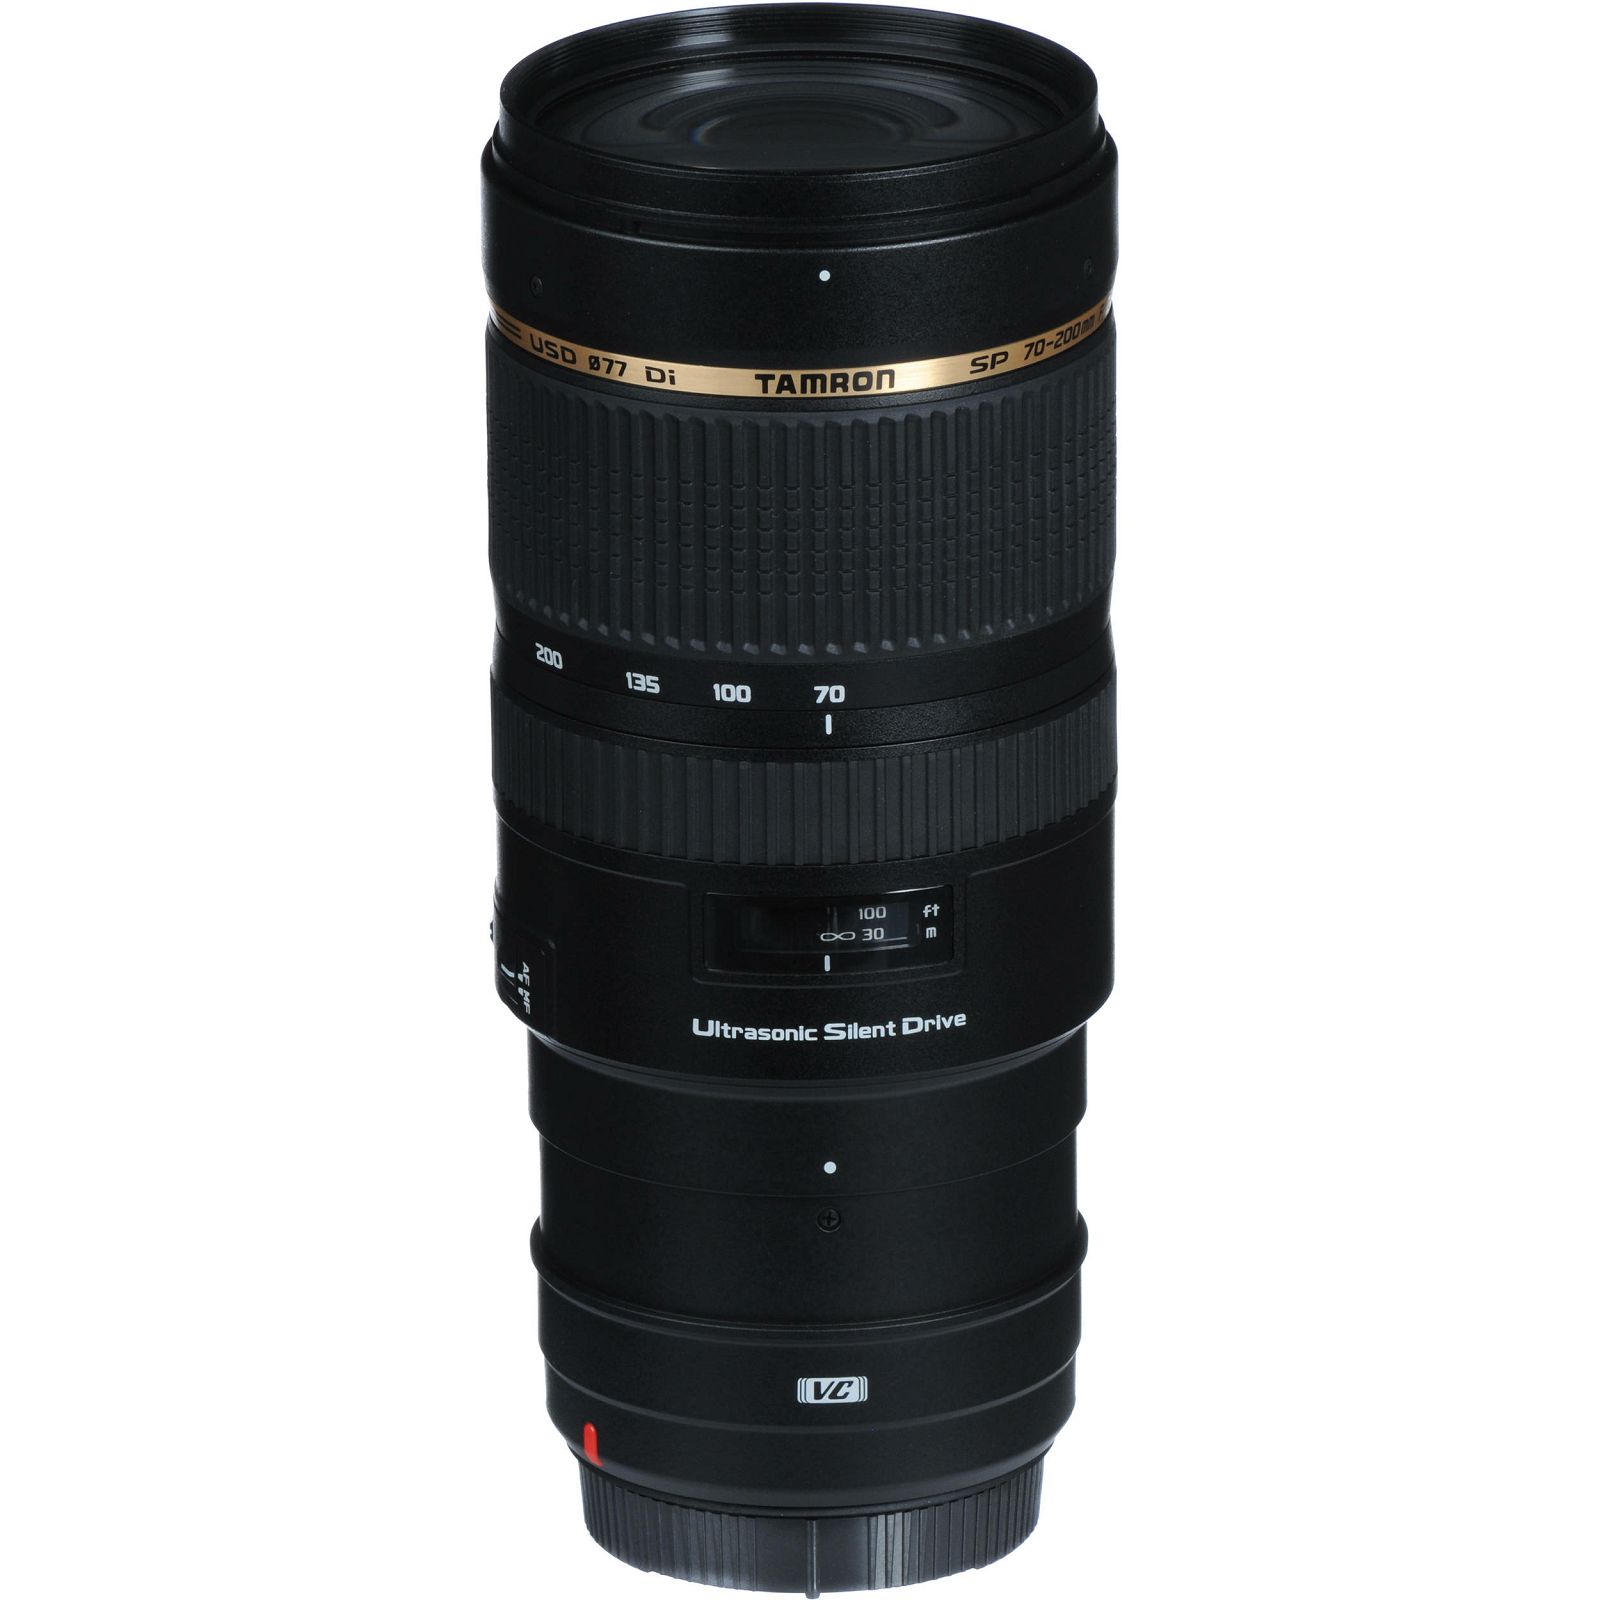 Tamron SP AF 70-200mm f/2.8 Di VC USD telefoto objektiv za Nikon FX (A009NII)